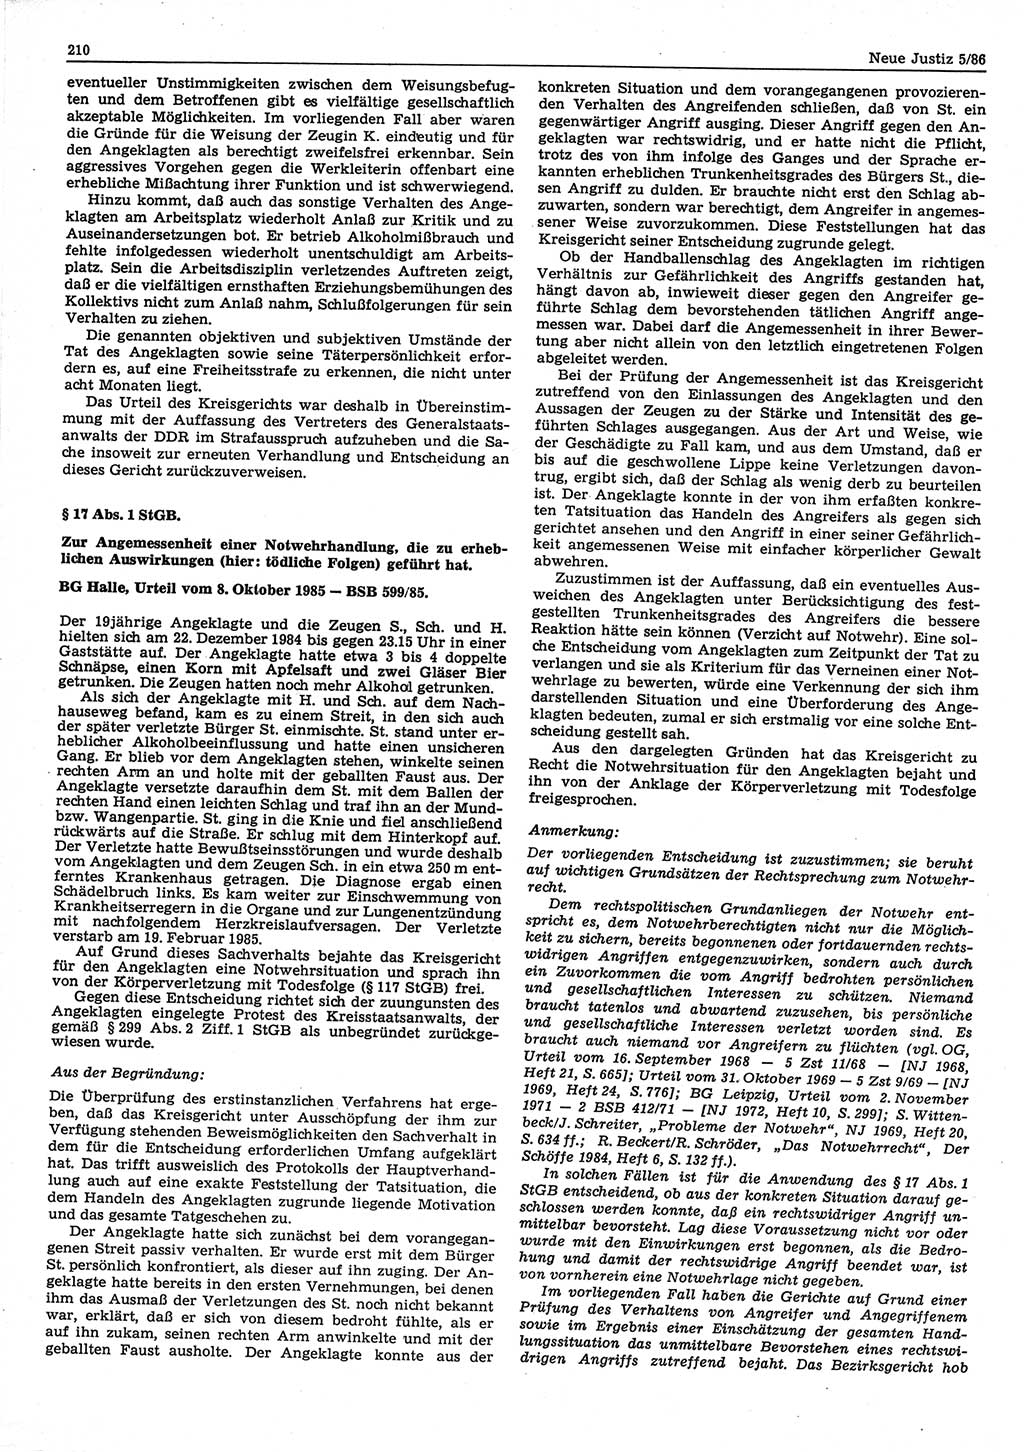 Neue Justiz (NJ), Zeitschrift für sozialistisches Recht und Gesetzlichkeit [Deutsche Demokratische Republik (DDR)], 40. Jahrgang 1986, Seite 210 (NJ DDR 1986, S. 210)